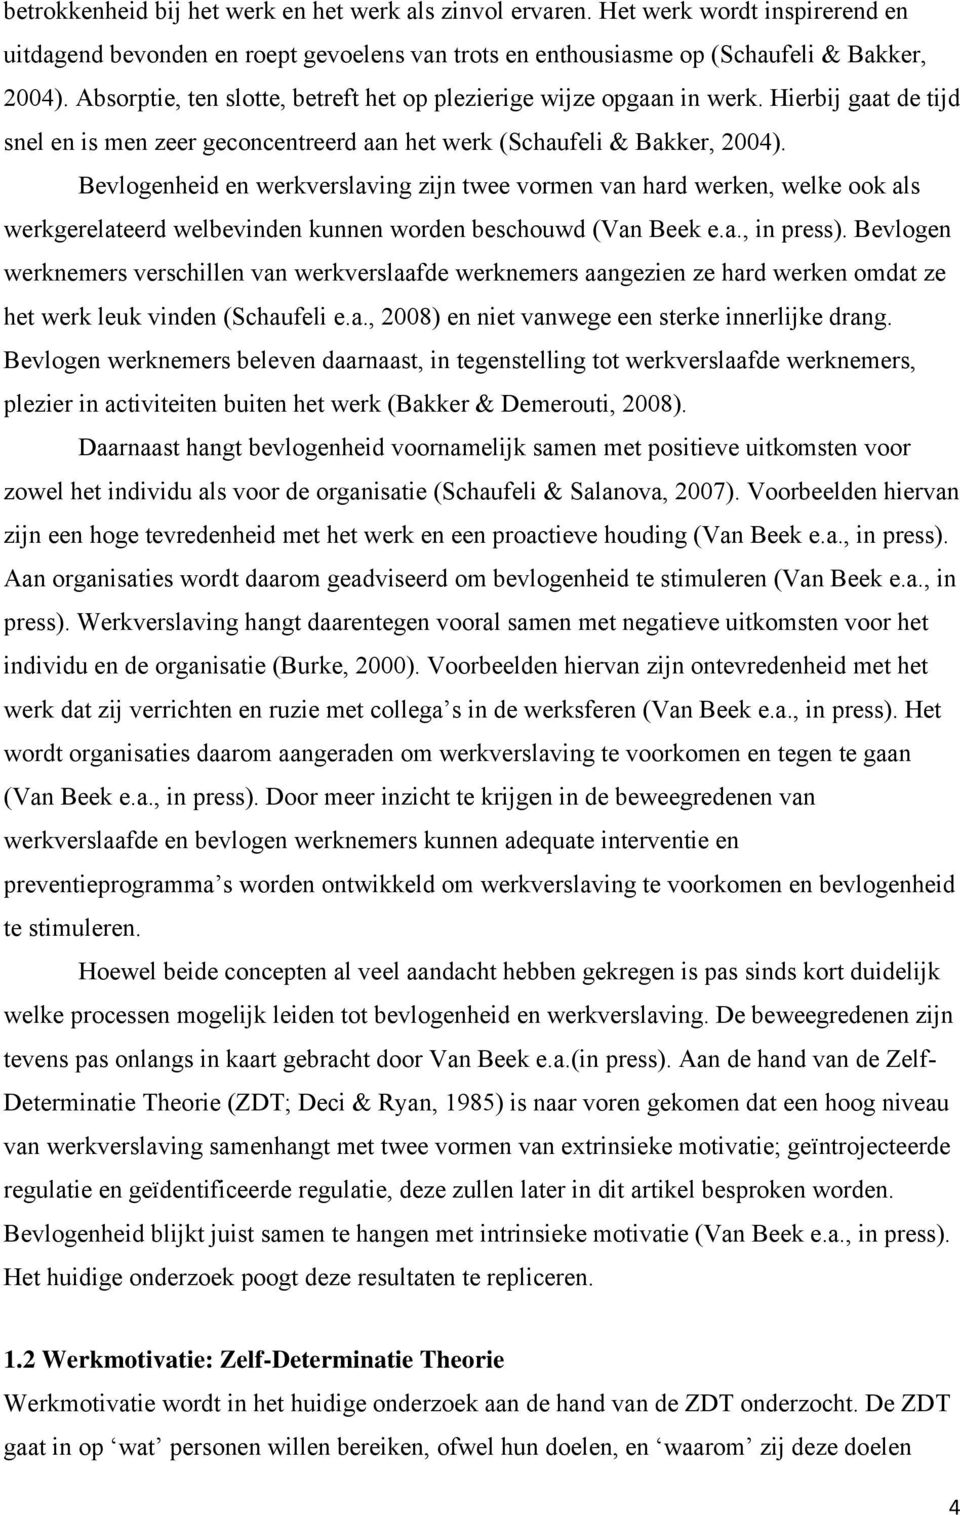 Bevlogenheid en werkverslaving zijn twee vormen van hard werken, welke ook als werkgerelateerd welbevinden kunnen worden beschouwd (Van Beek e.a., in press).